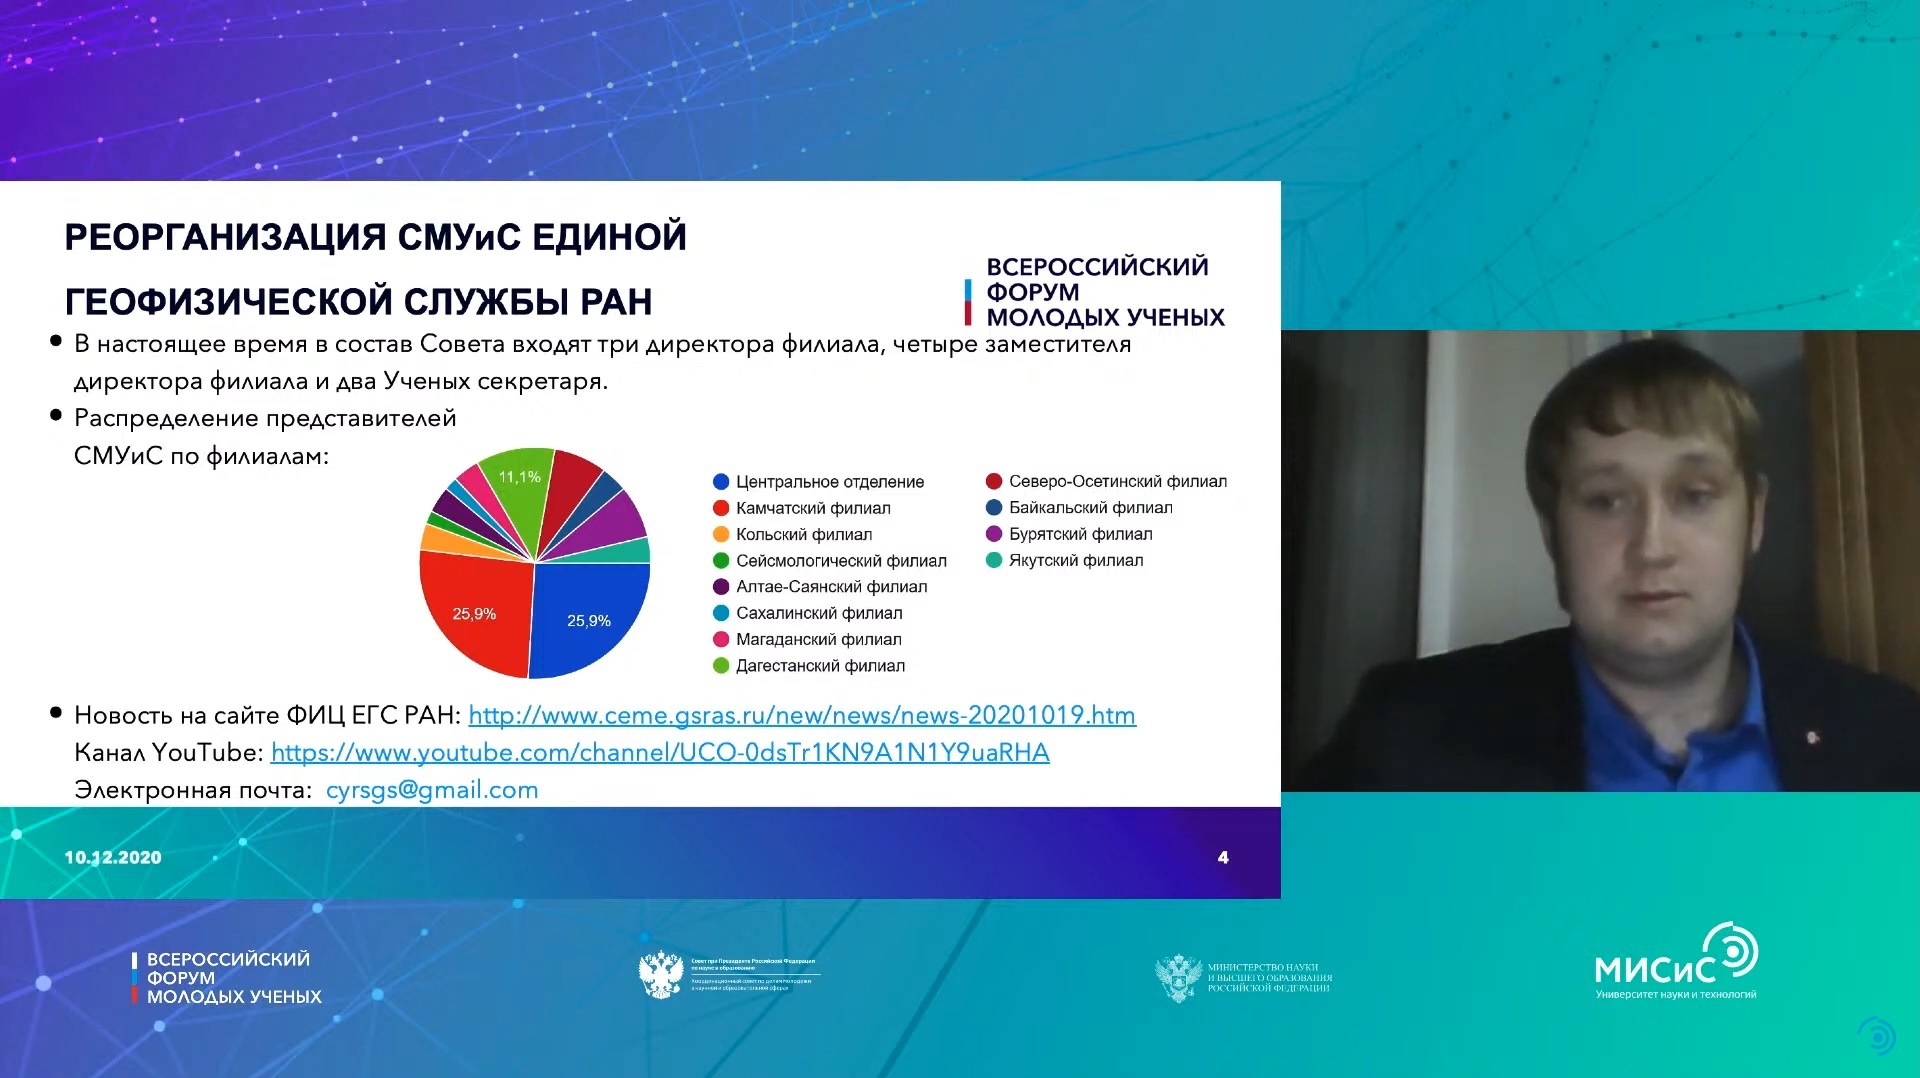 Опыт реорганизации СМУиС ФИЦ ЕГС РАН отмечен на Всероссийском форуме молодых ученых